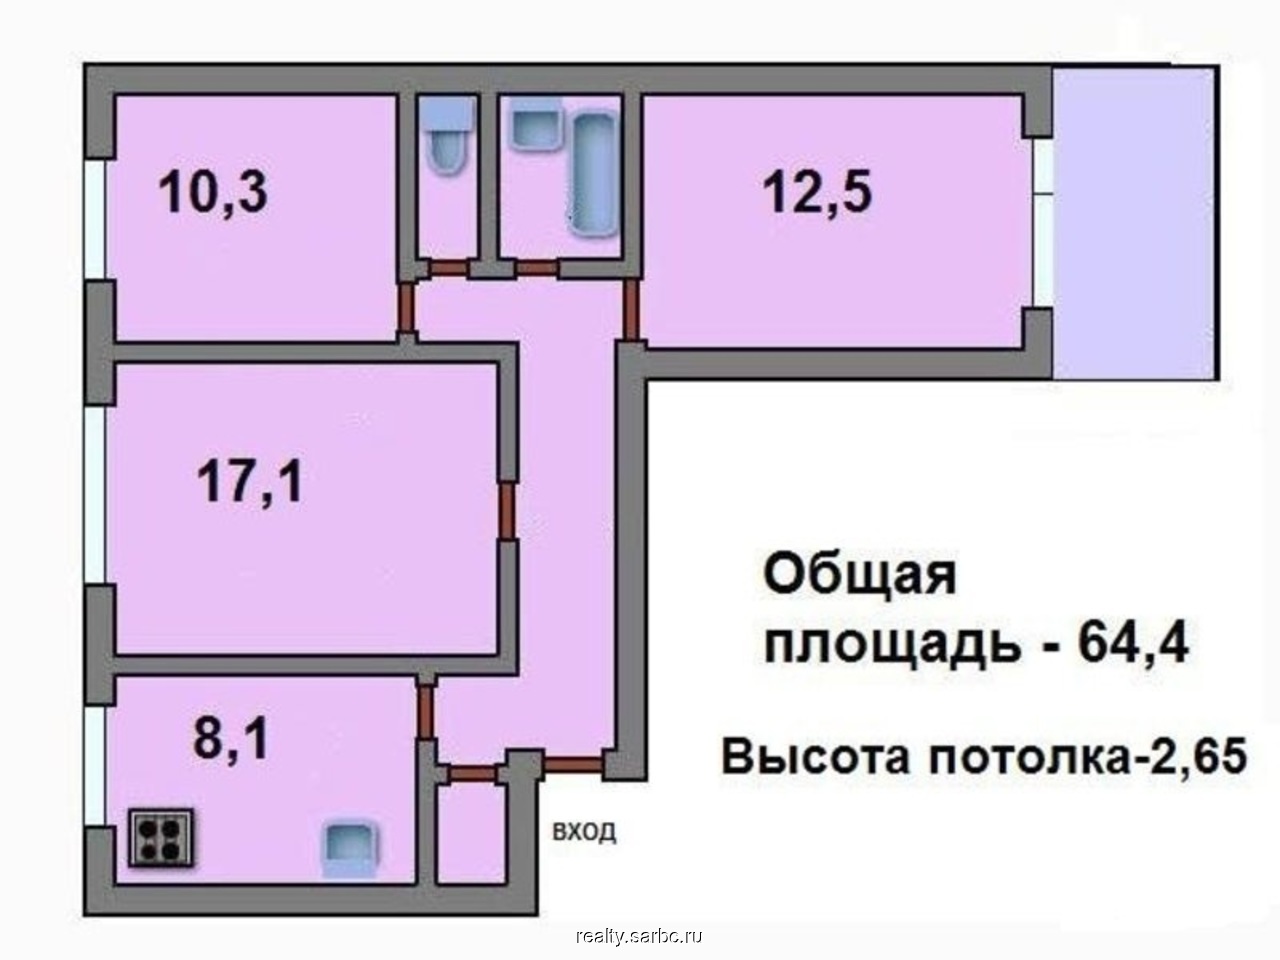 Комсомольский трехкомнатная купить. Планировка 1-515 трехкомнатная. Планировка 3-х комнатной квартиры в панельном доме. I-515/9ш планировка двушки. Планировка 3х комнатной квартиры 90кв.